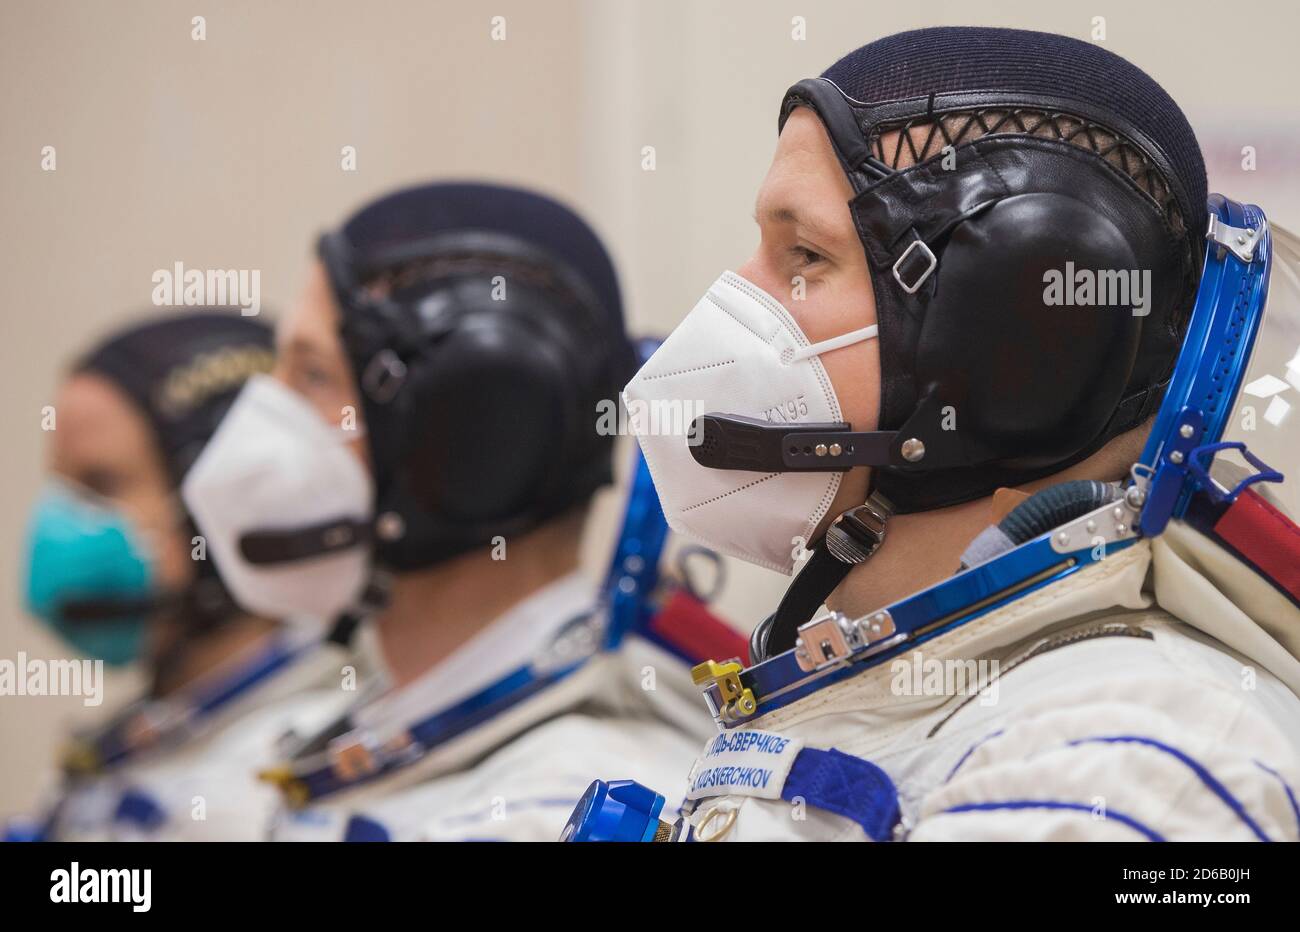 Baikonur, Kasachstan. Oktober 2020. Expedition 64 NASA-Astronautin Kate Rubins, links und russische Kosmonauten Sergey Ryzhikov, Mitte, und Sergey KUD-Sverchkov, rechts, von Roskosmos in ihren russischen Sokol-Anzügen, bevor sie die russische Sojus MS-17-Sonde zum Start auf dem Kosmodrom Baikonur am 14. Oktober 2020 in Baikonur, Kasachstan, bestiegen. Die Crew-Mitglieder Sergey Ryzhikov, Sergey KUD-Sverchkov von Roscosmos und NASA-Astronautin Kate Rubins starten eine sechsmonatige Mission zur Internationalen Raumstation. Quelle: Andrey Shelepin/NASA/Alamy Live News Stockfoto